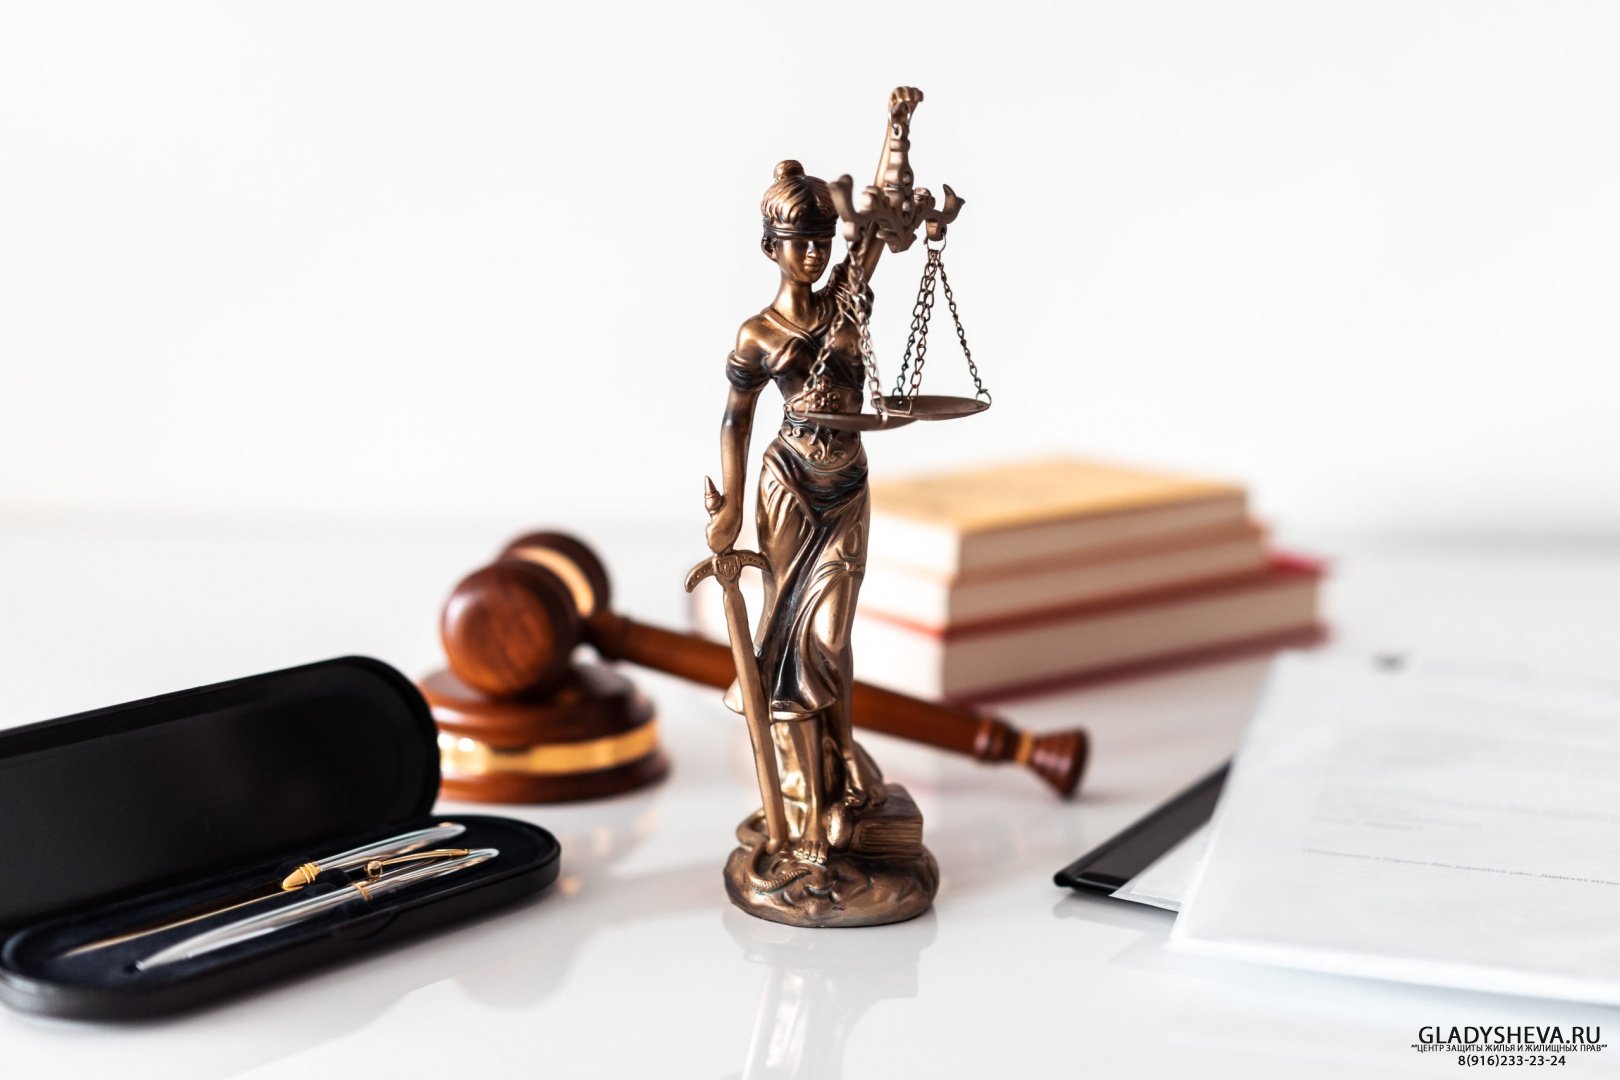 Правовая и юридическая консультация